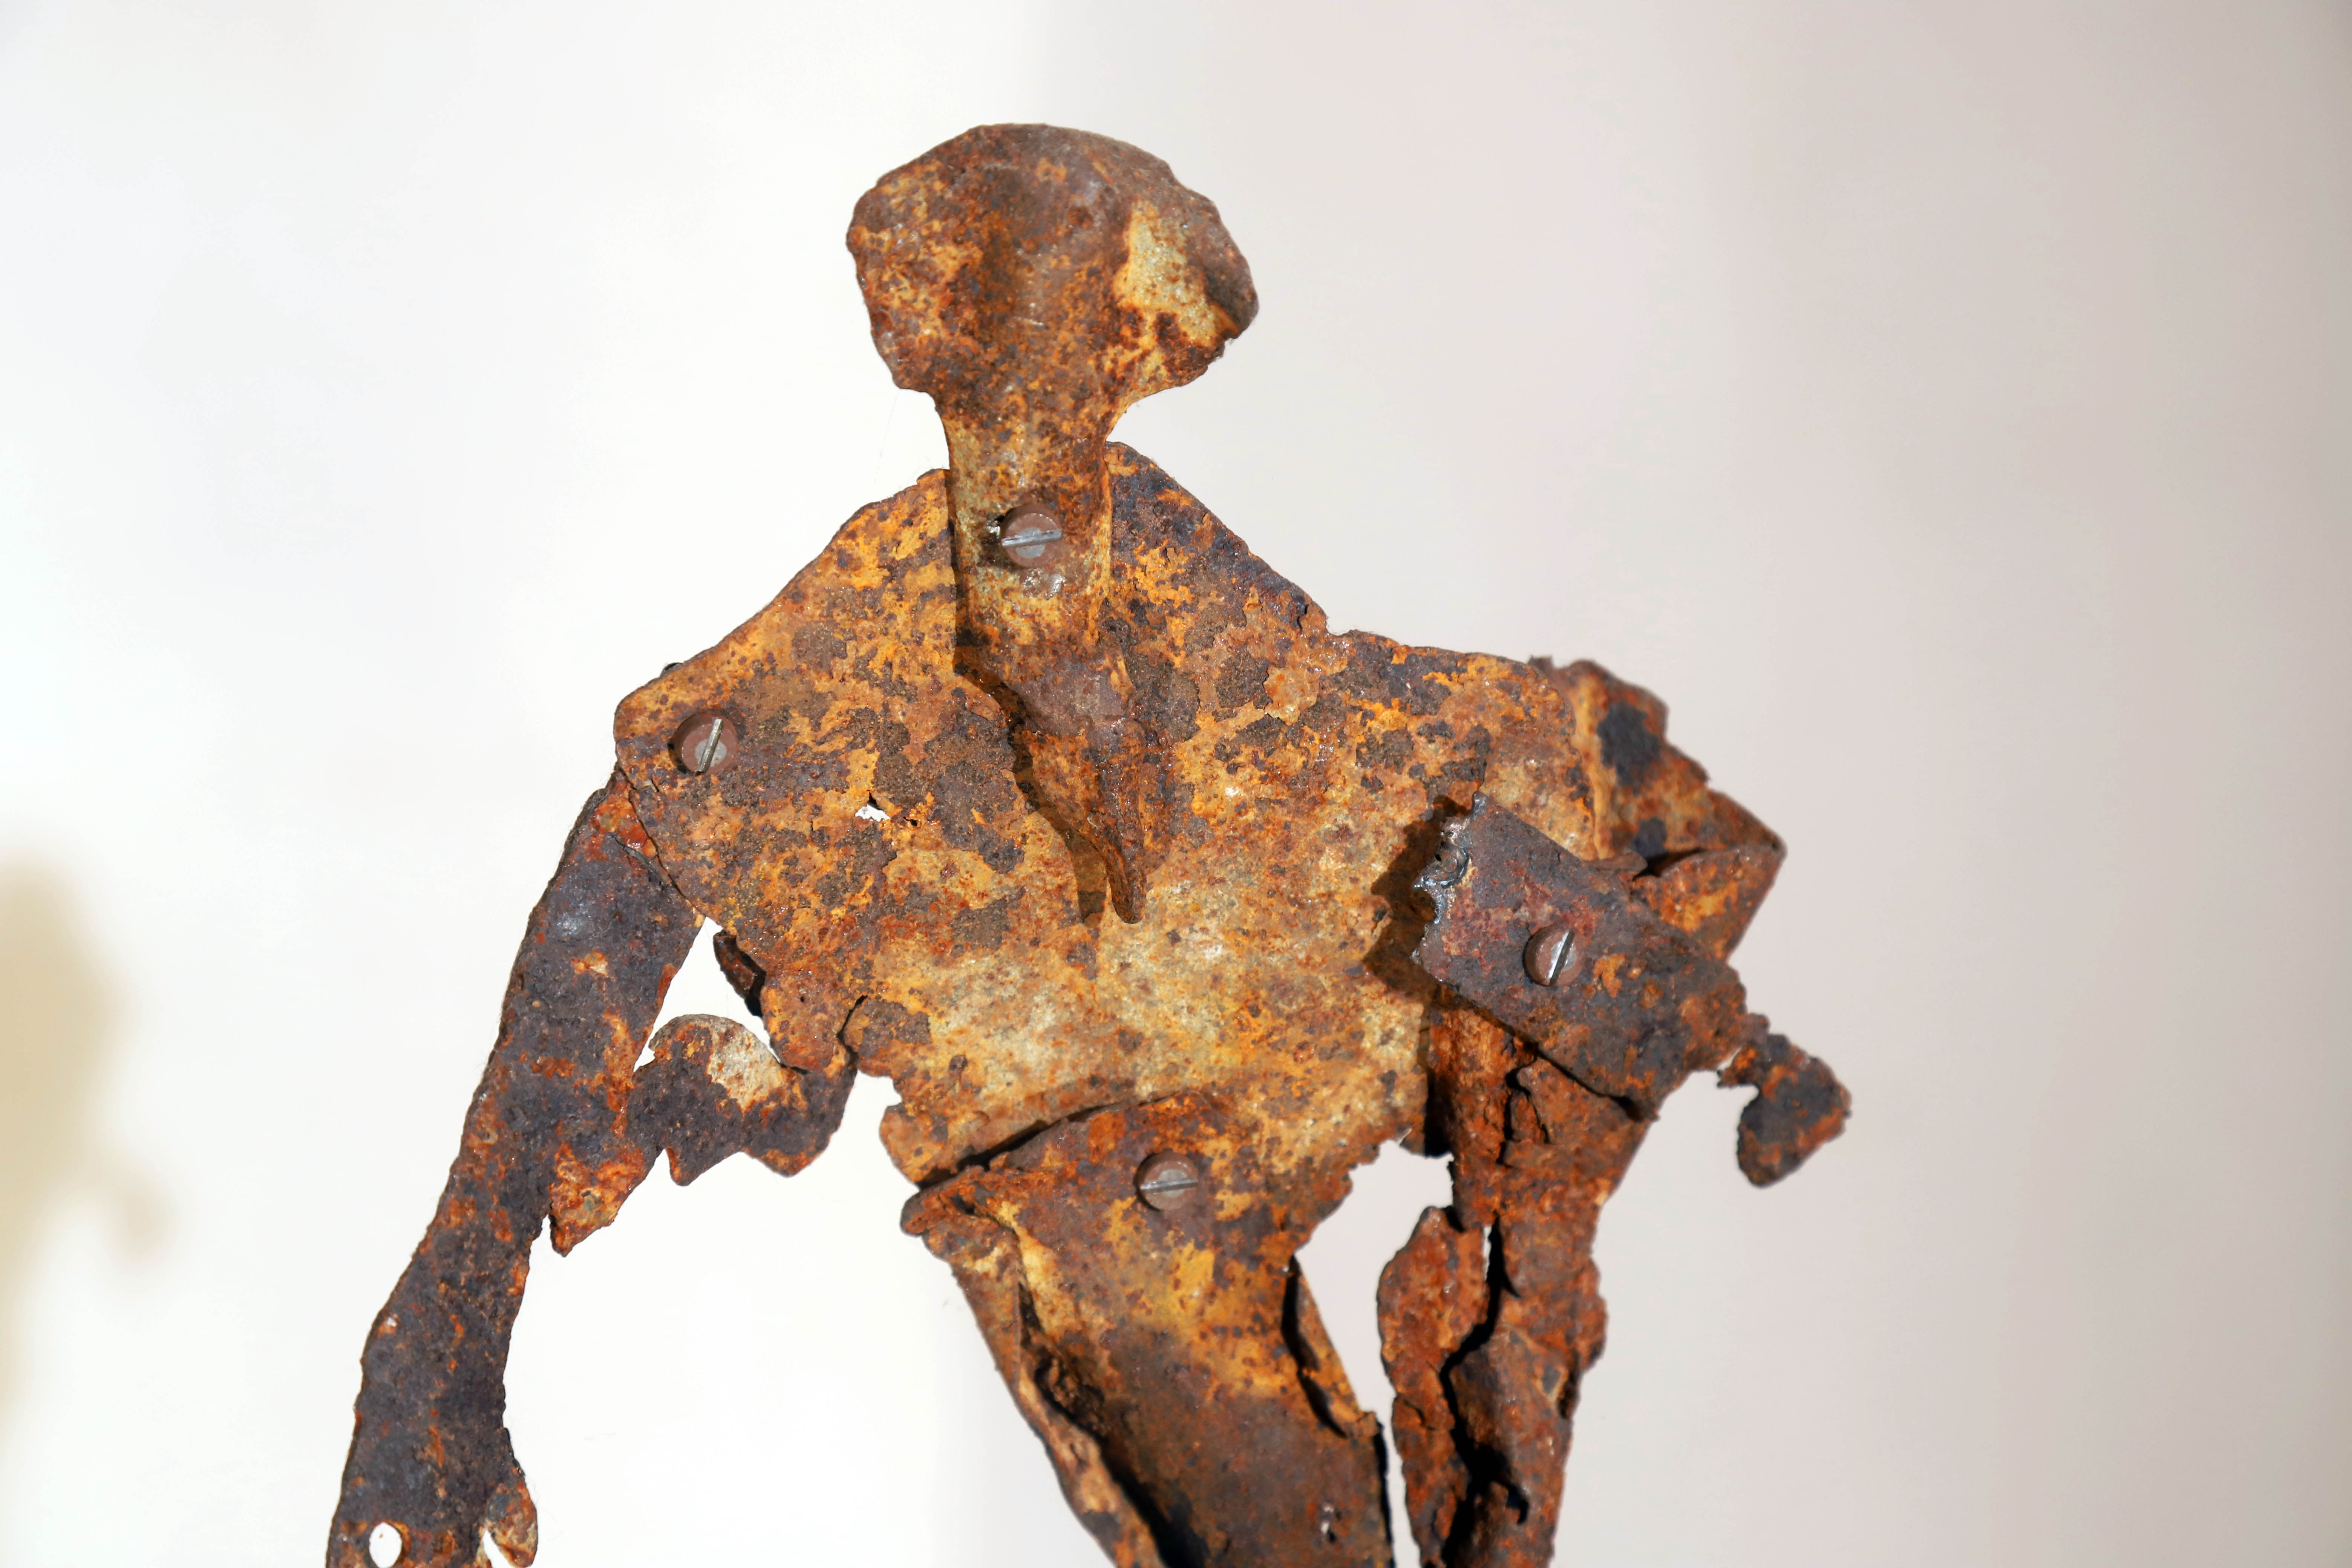 Antonio Panzuto - sculture Ruggini - Figura danzante 3 - Rusty sculpture Dancing figure